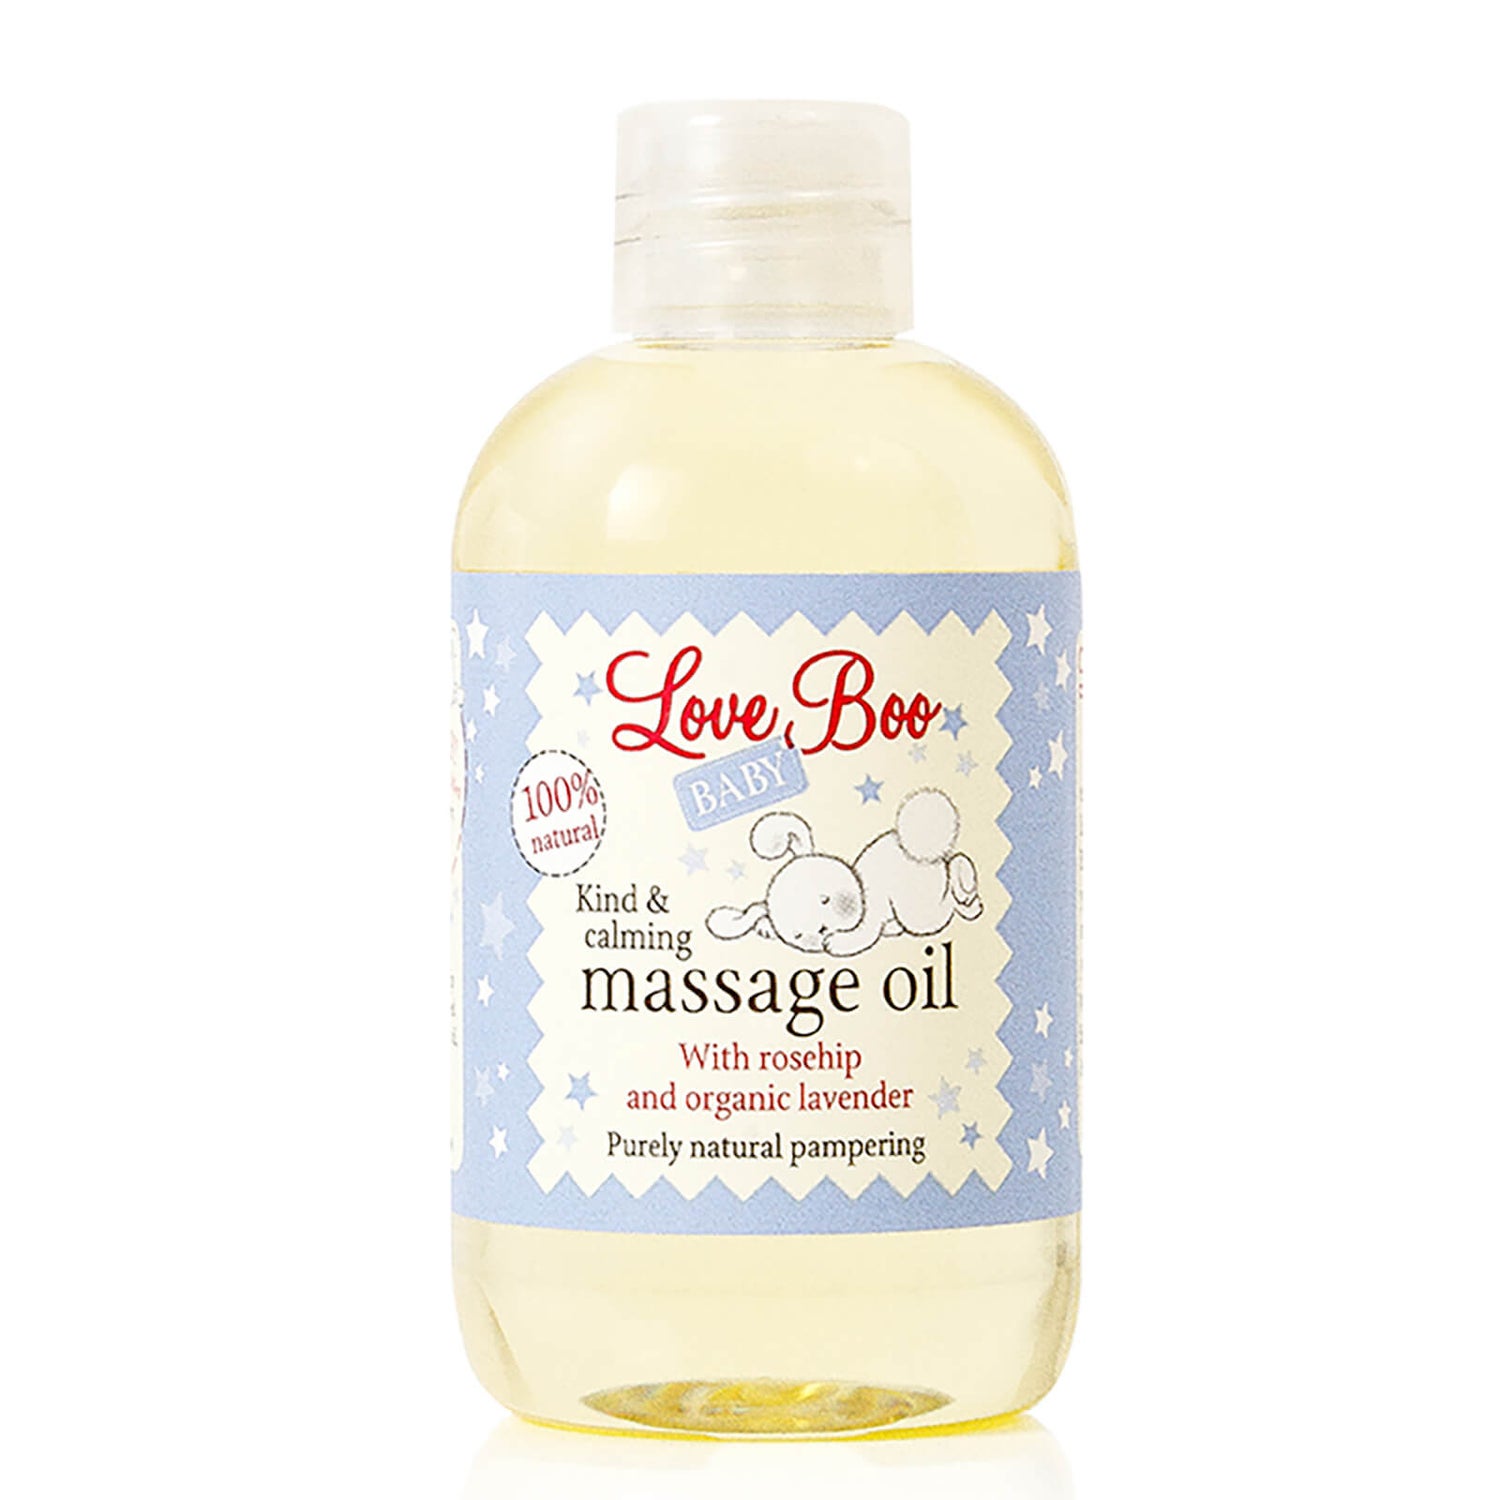 Love Boo Massage Oil (3.4 oz)